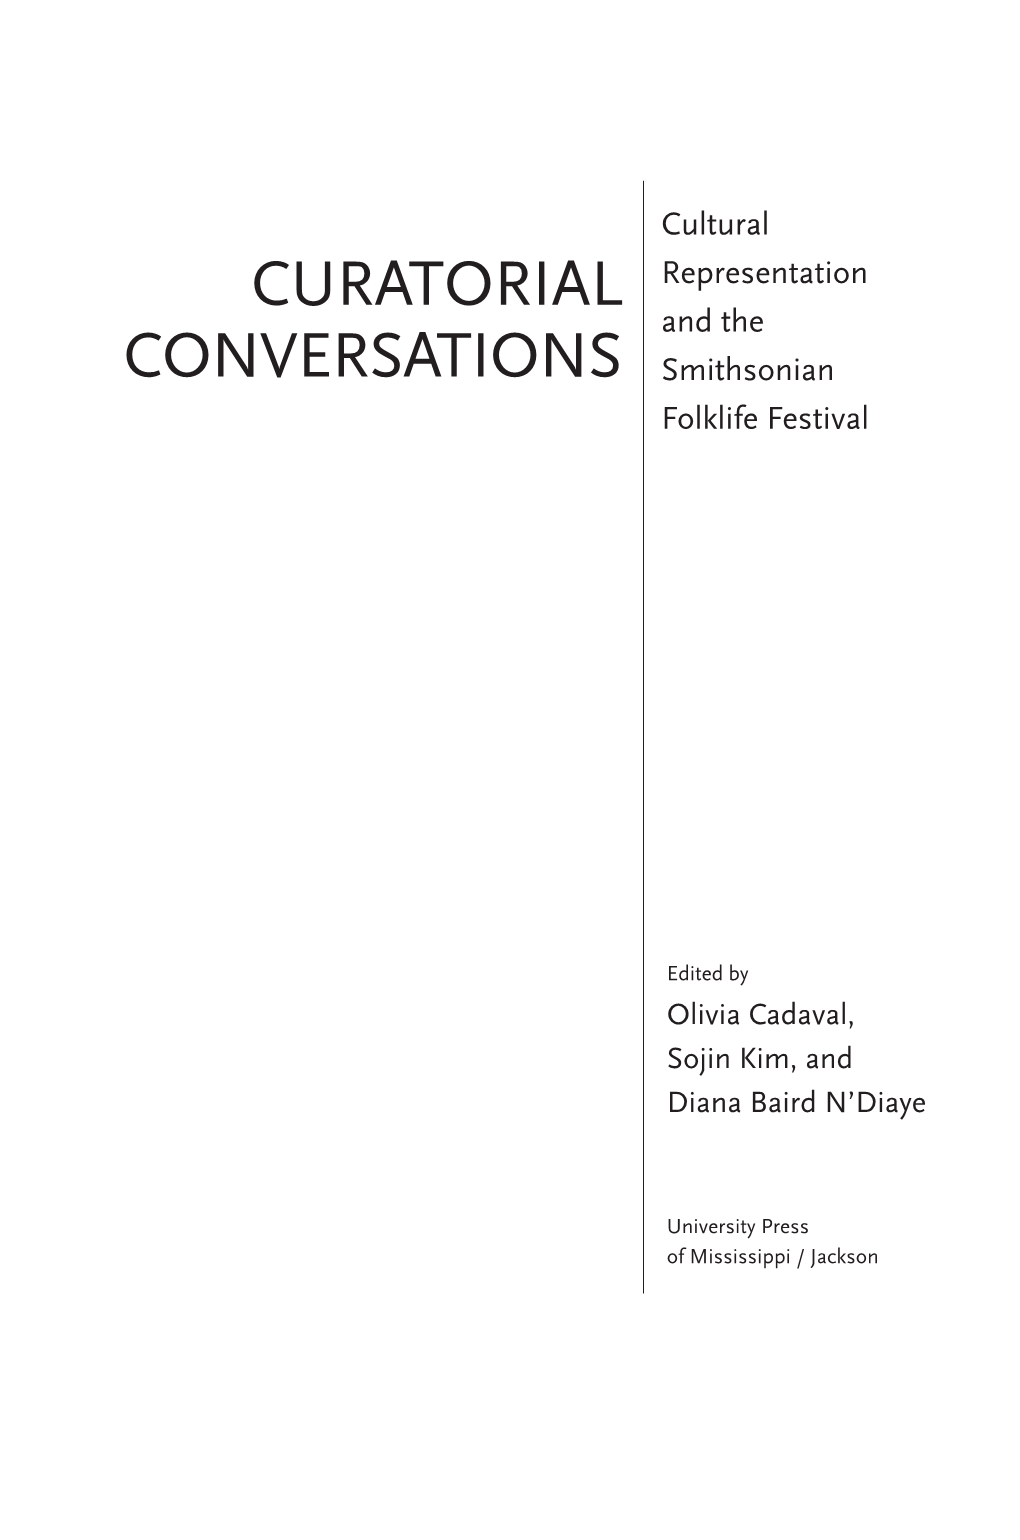 Curatorial Conversations: Cultural